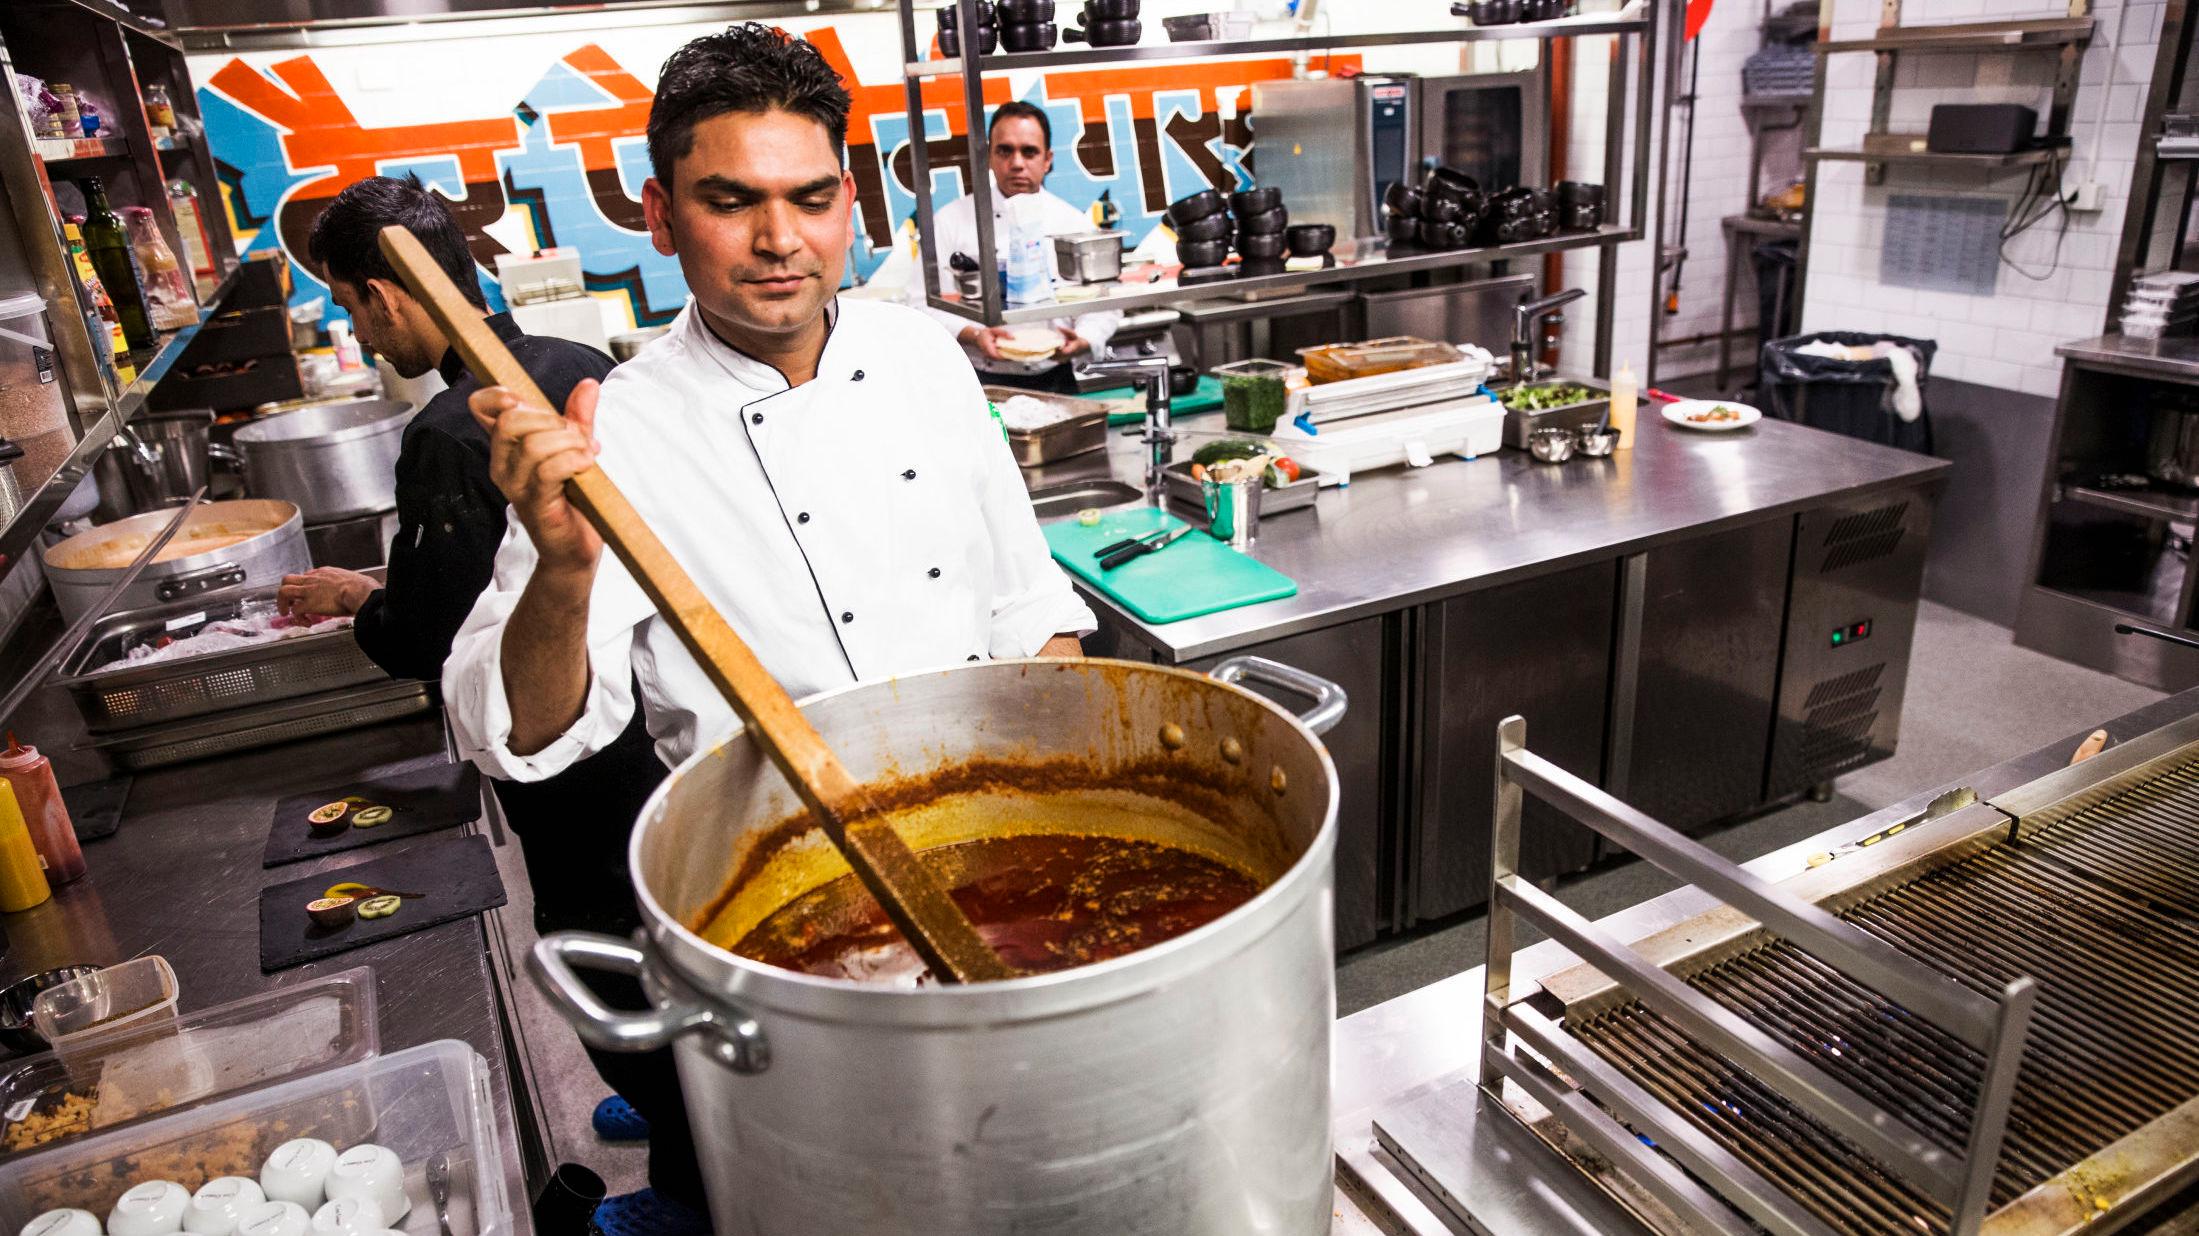 KLASSISK INDISK: På Der Peppern Gror får du klassisk indisk mat, i litt kulere innpakning. Foto: Frode Hansen/VG.